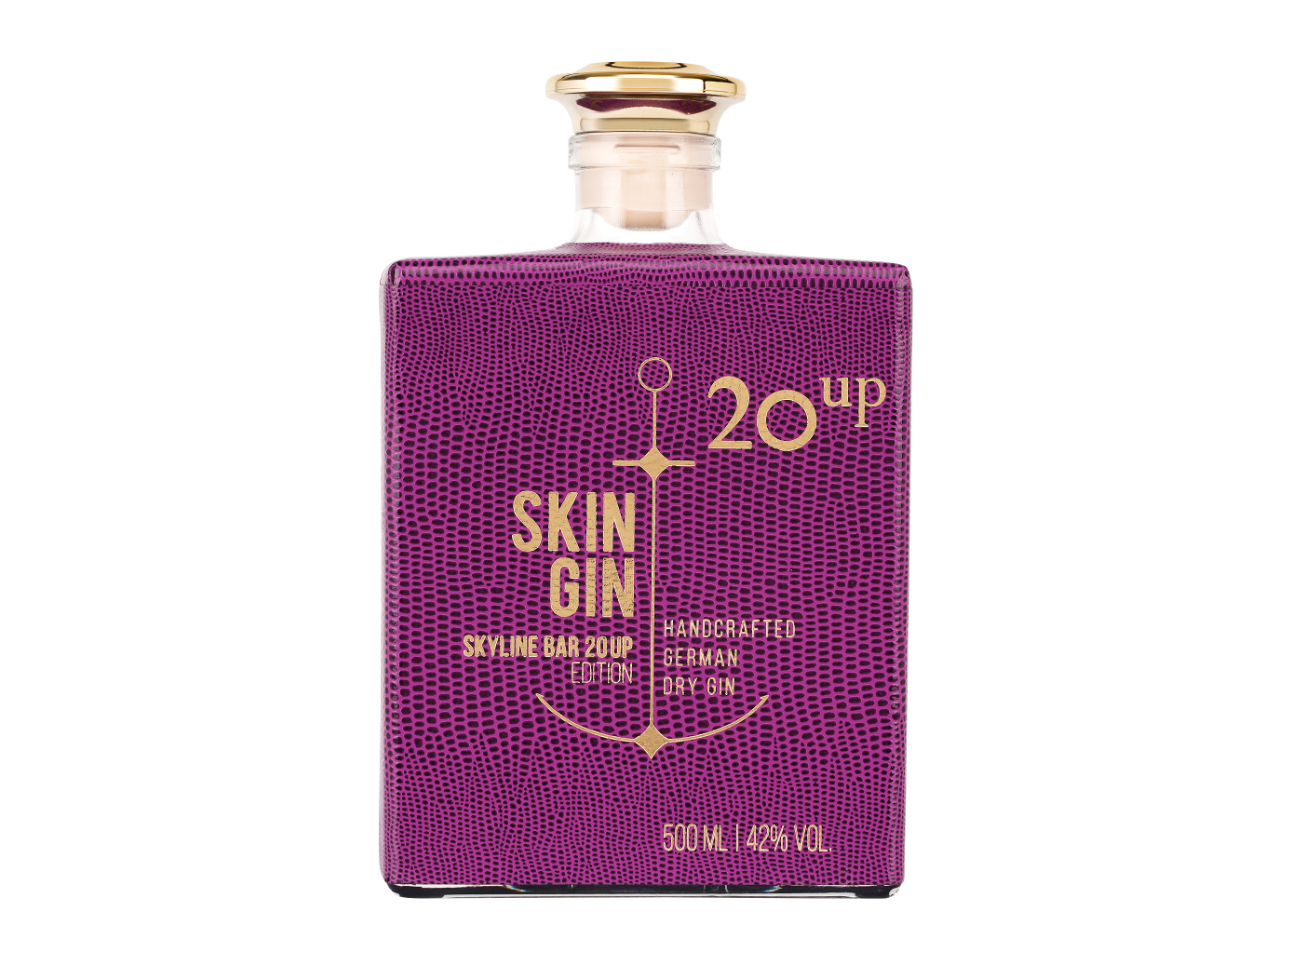 Skin Gin - Skyline Bar 20up Edition